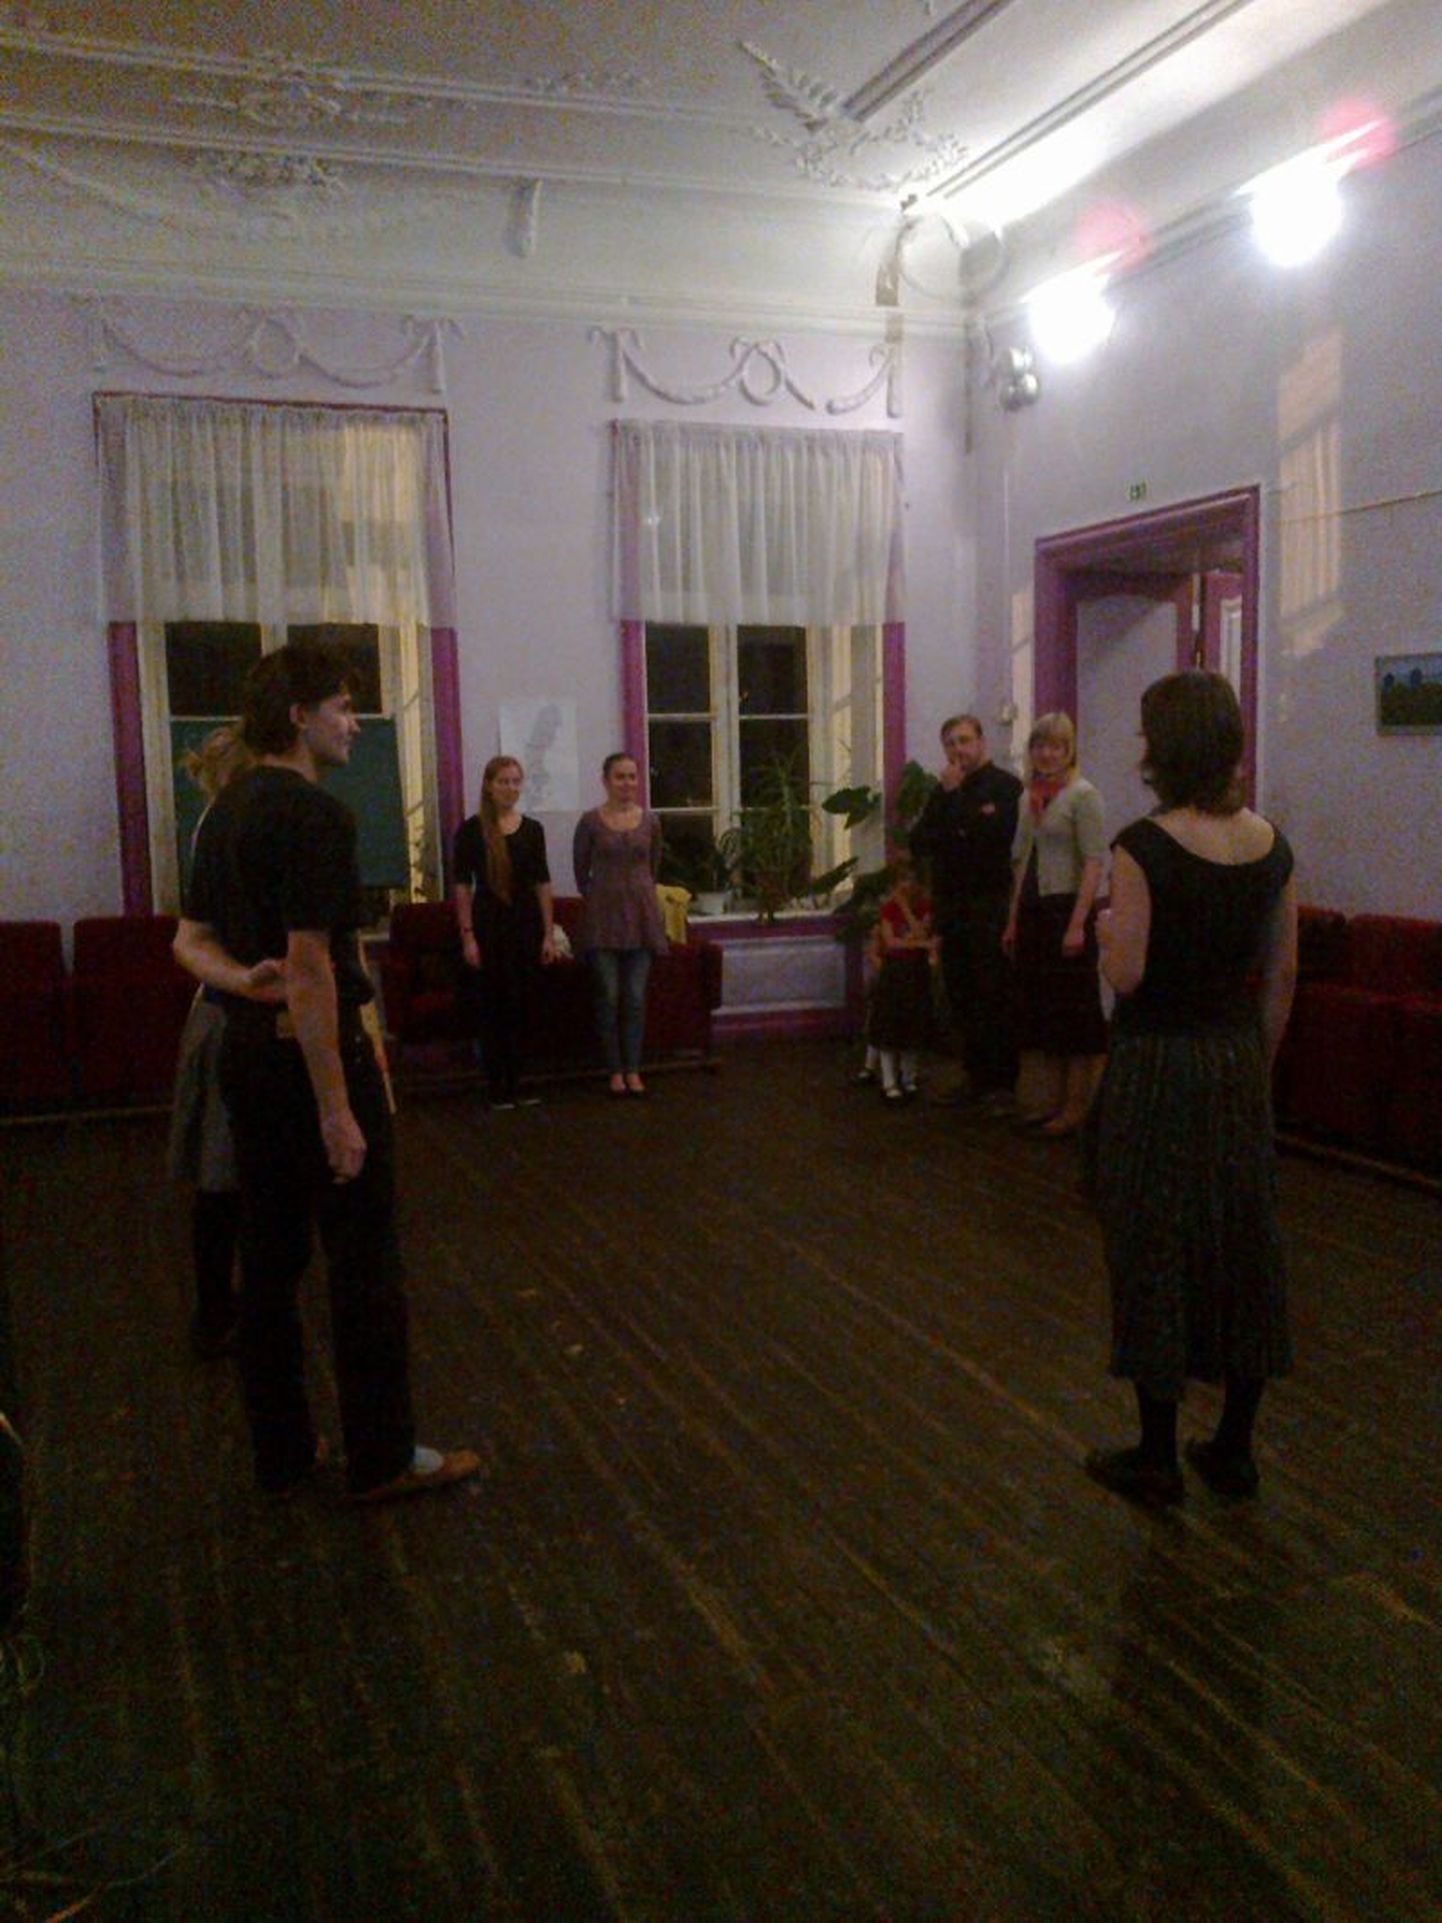 Sargvere mõisas juhatati ööpäev sisse rootsi tantsude õpitoaga.